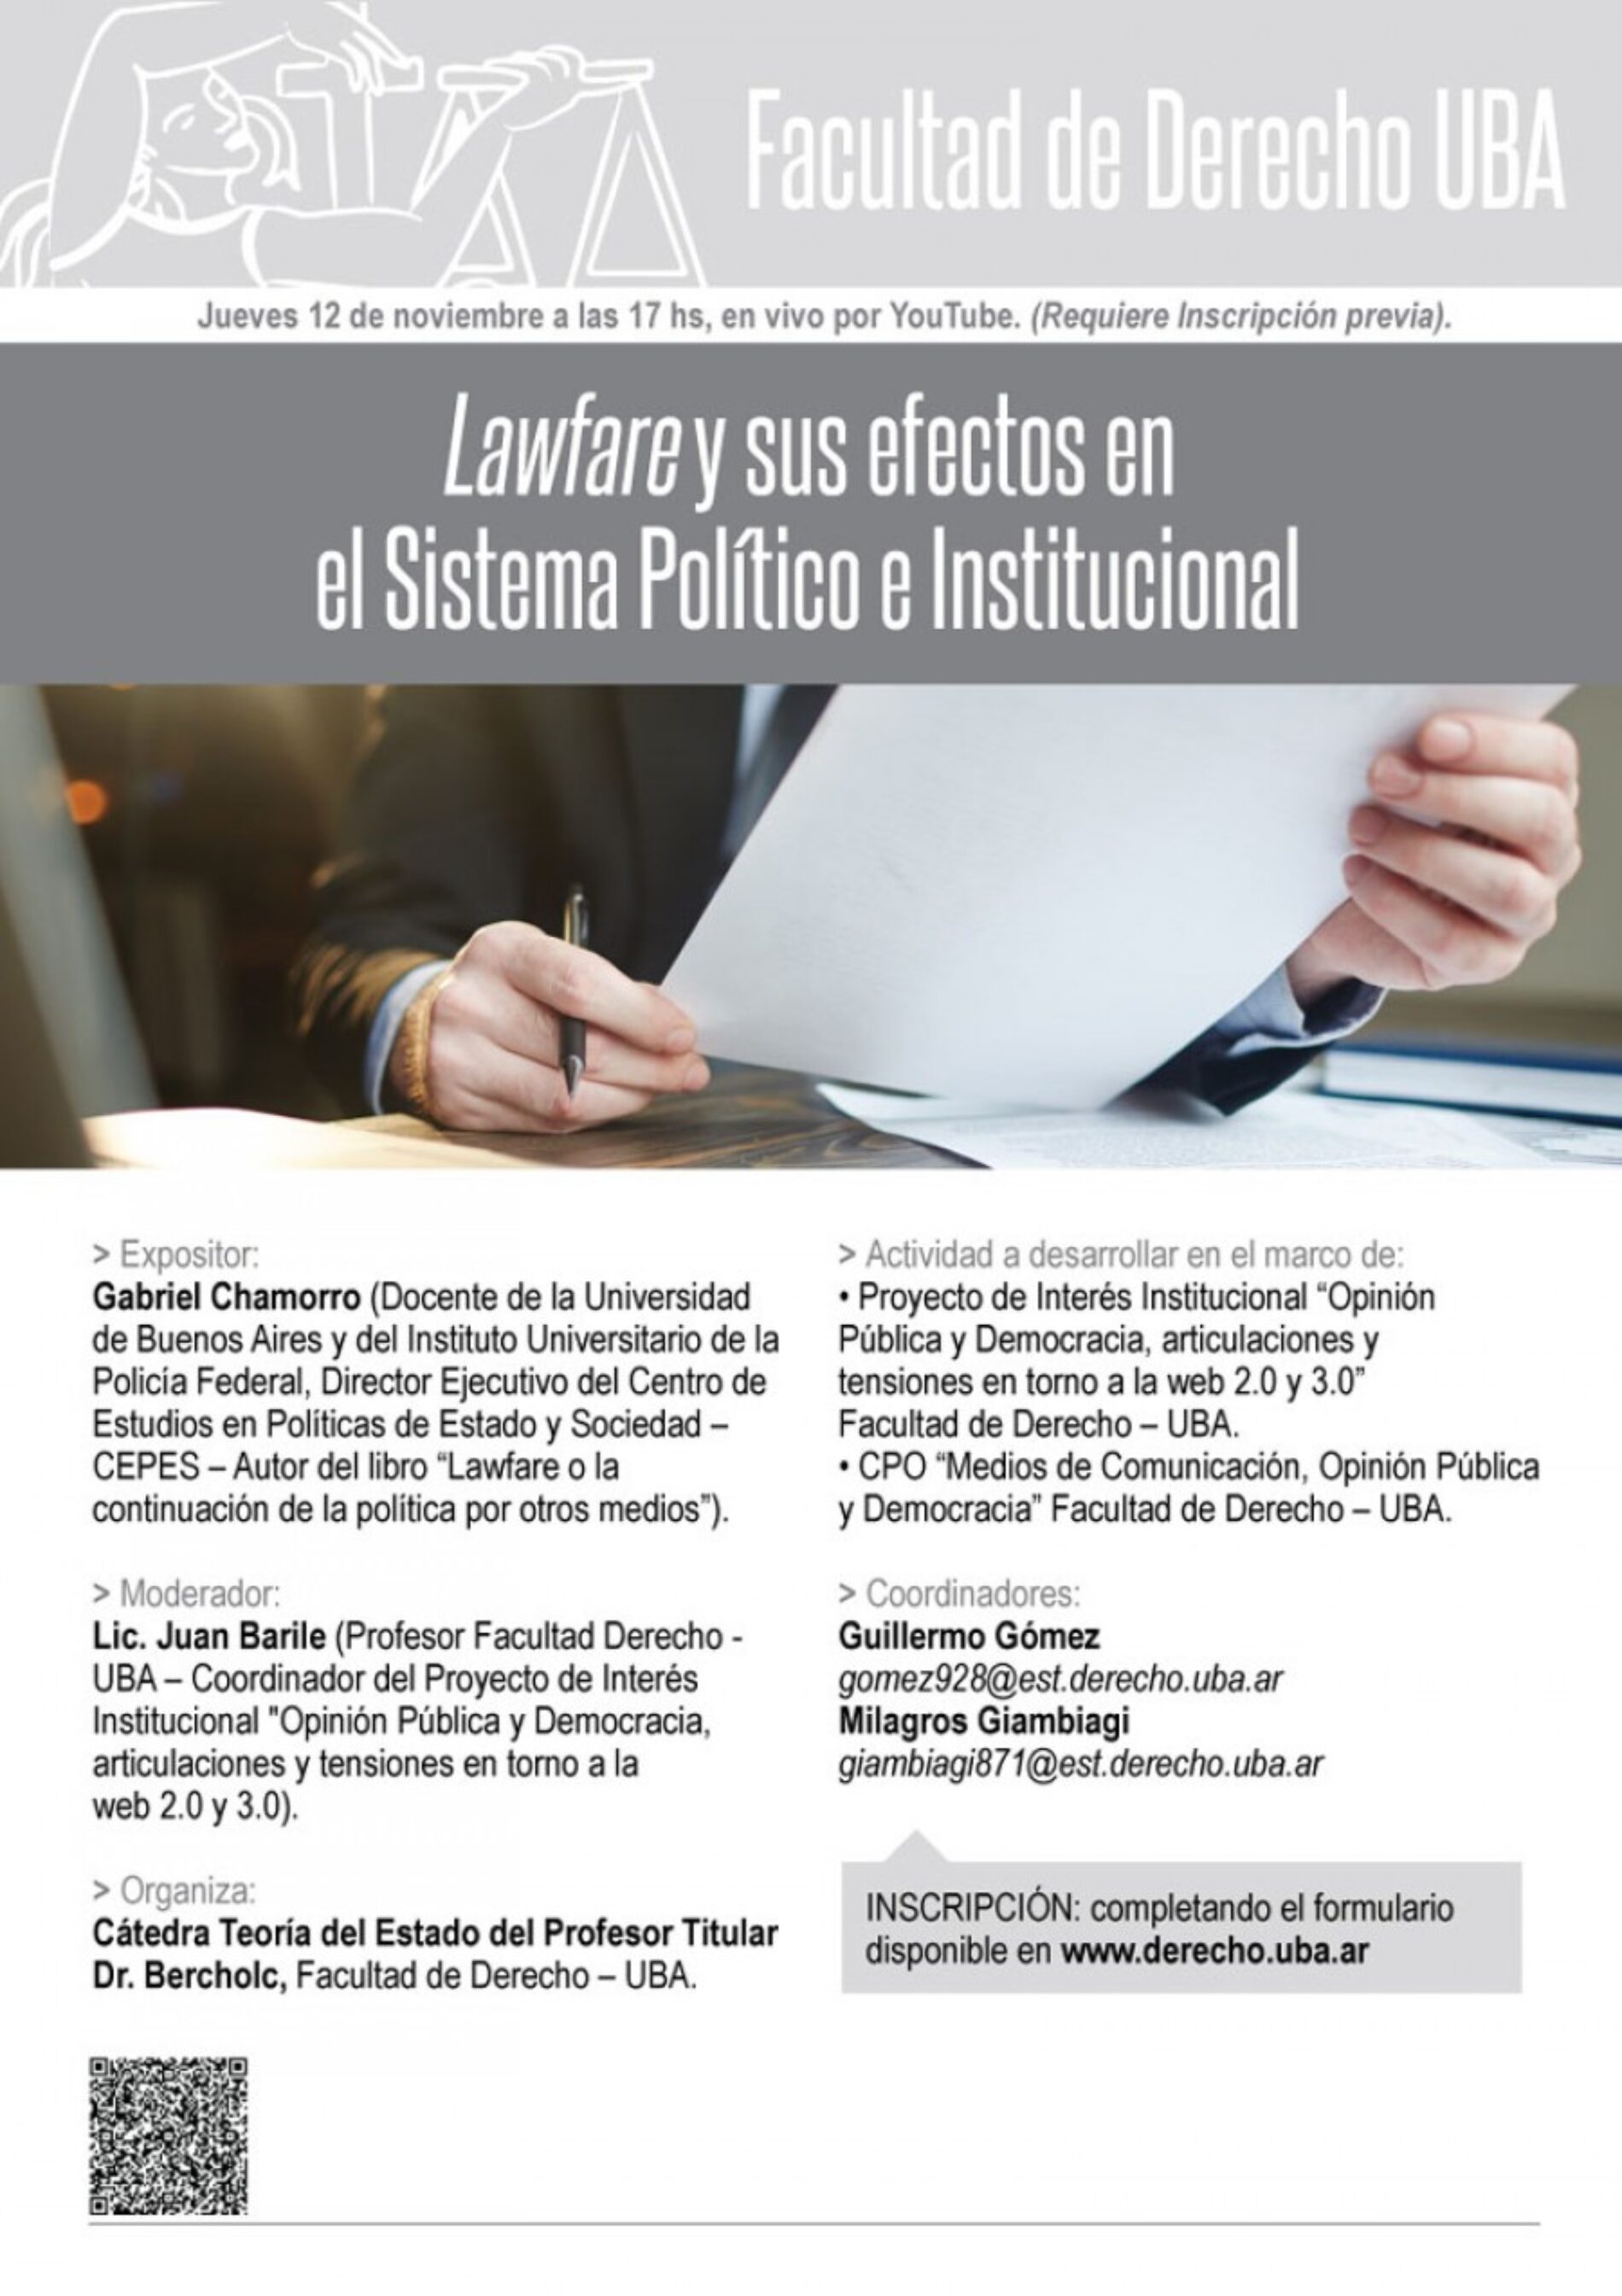 Lawfare y sus efectos en el Sistema Político e Institucional